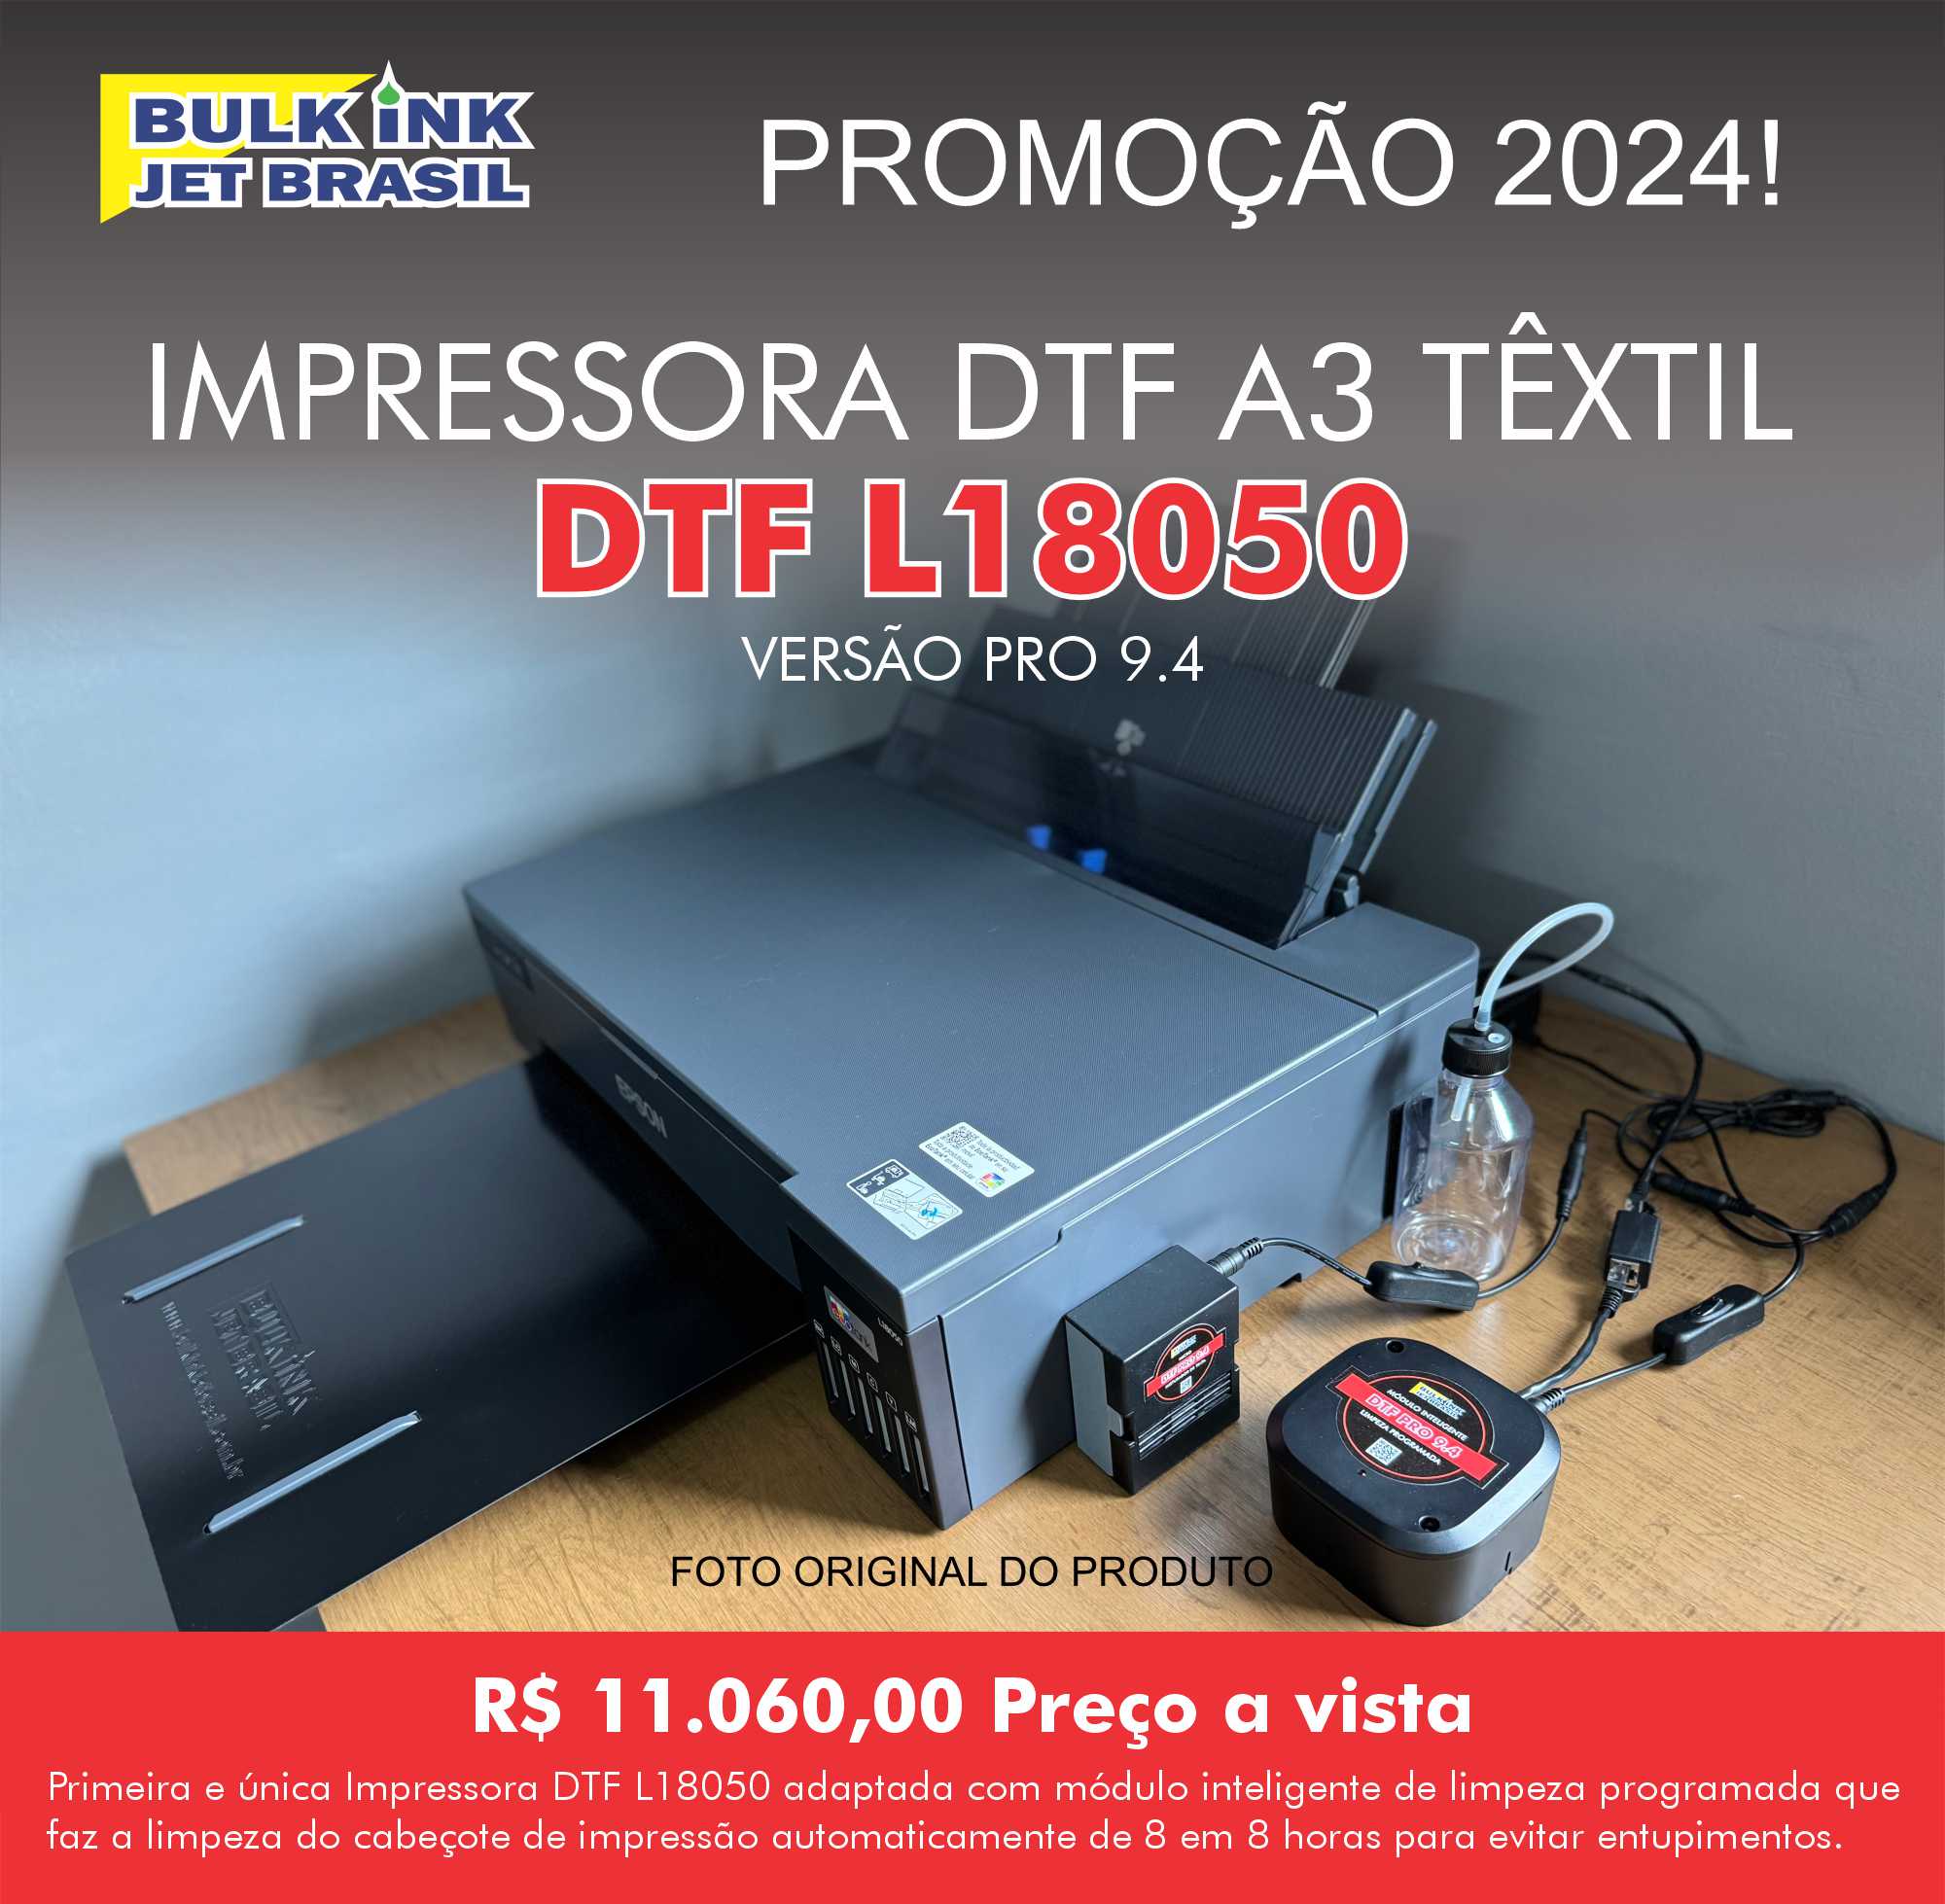 Impressora DTF L18050 Versão PRO 9.4 agora com modulo inteligente de limpeza programada micro misturador de tinta branca e bandeja frontal - Bulk Ink Jet Brasil